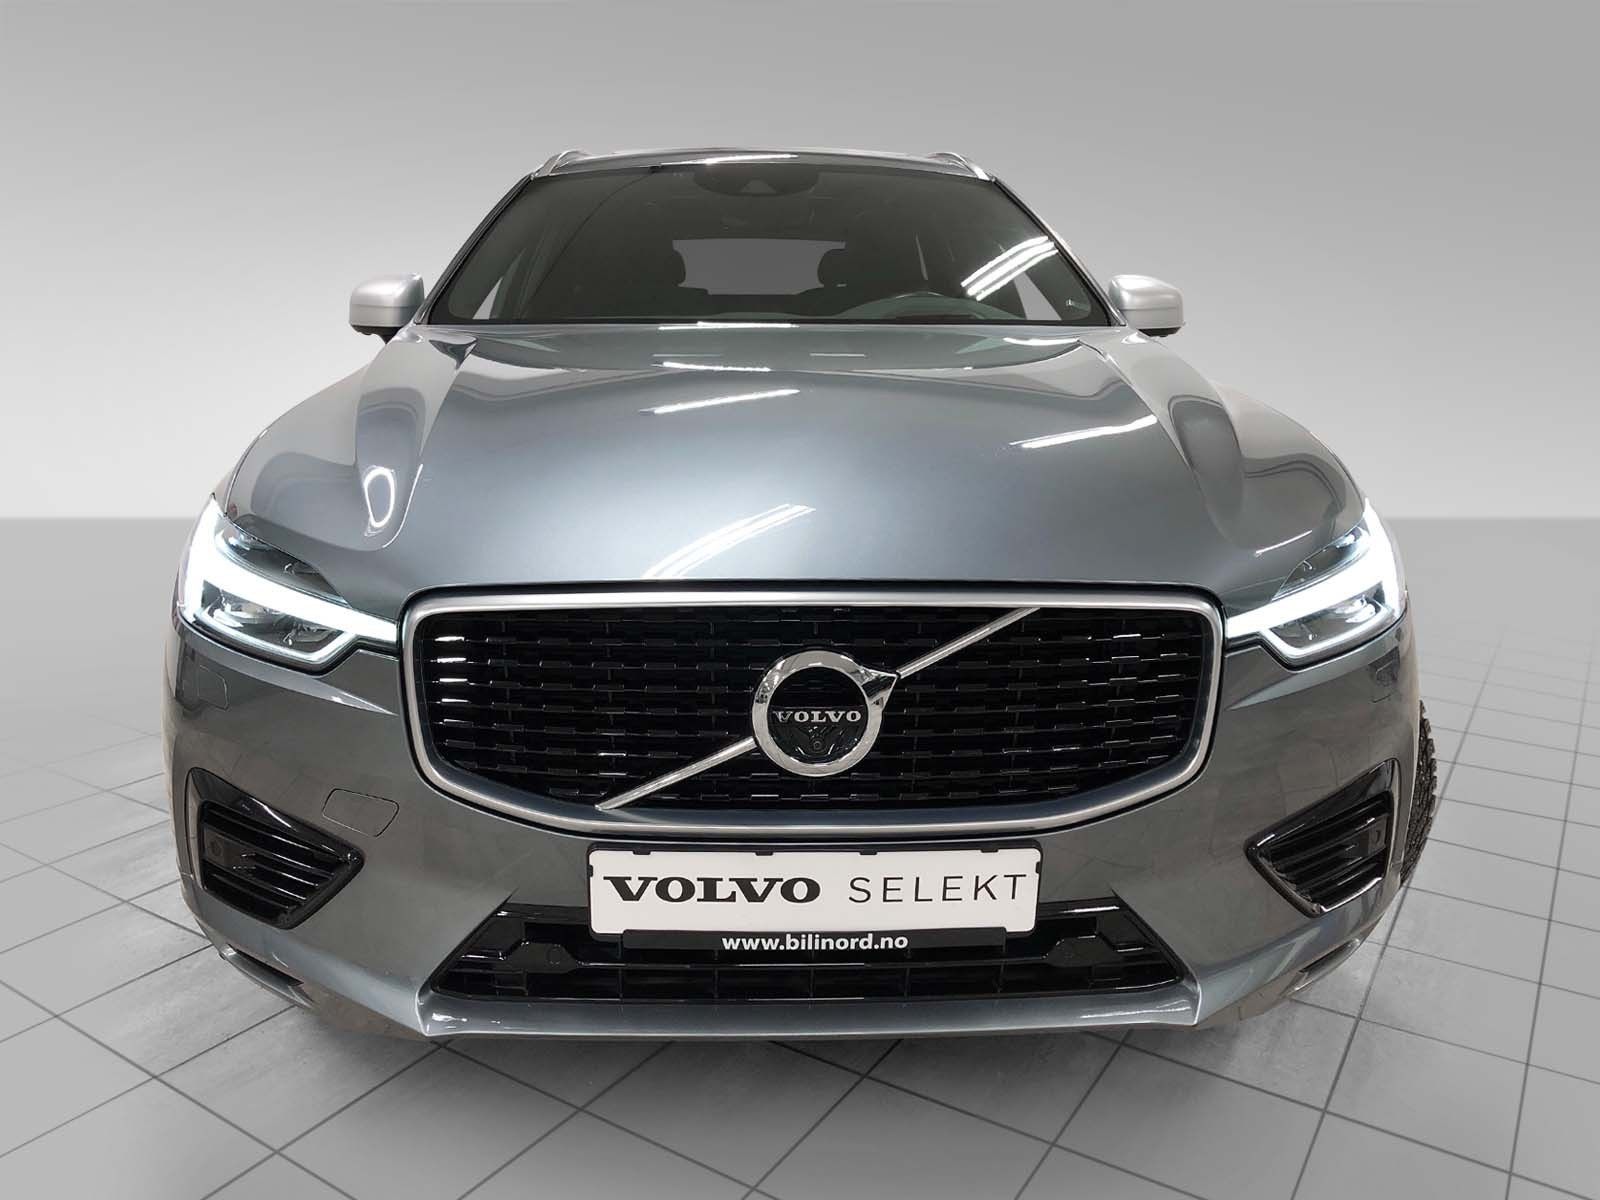 Volvo Selekt er det tryggeste valget av bruktbil